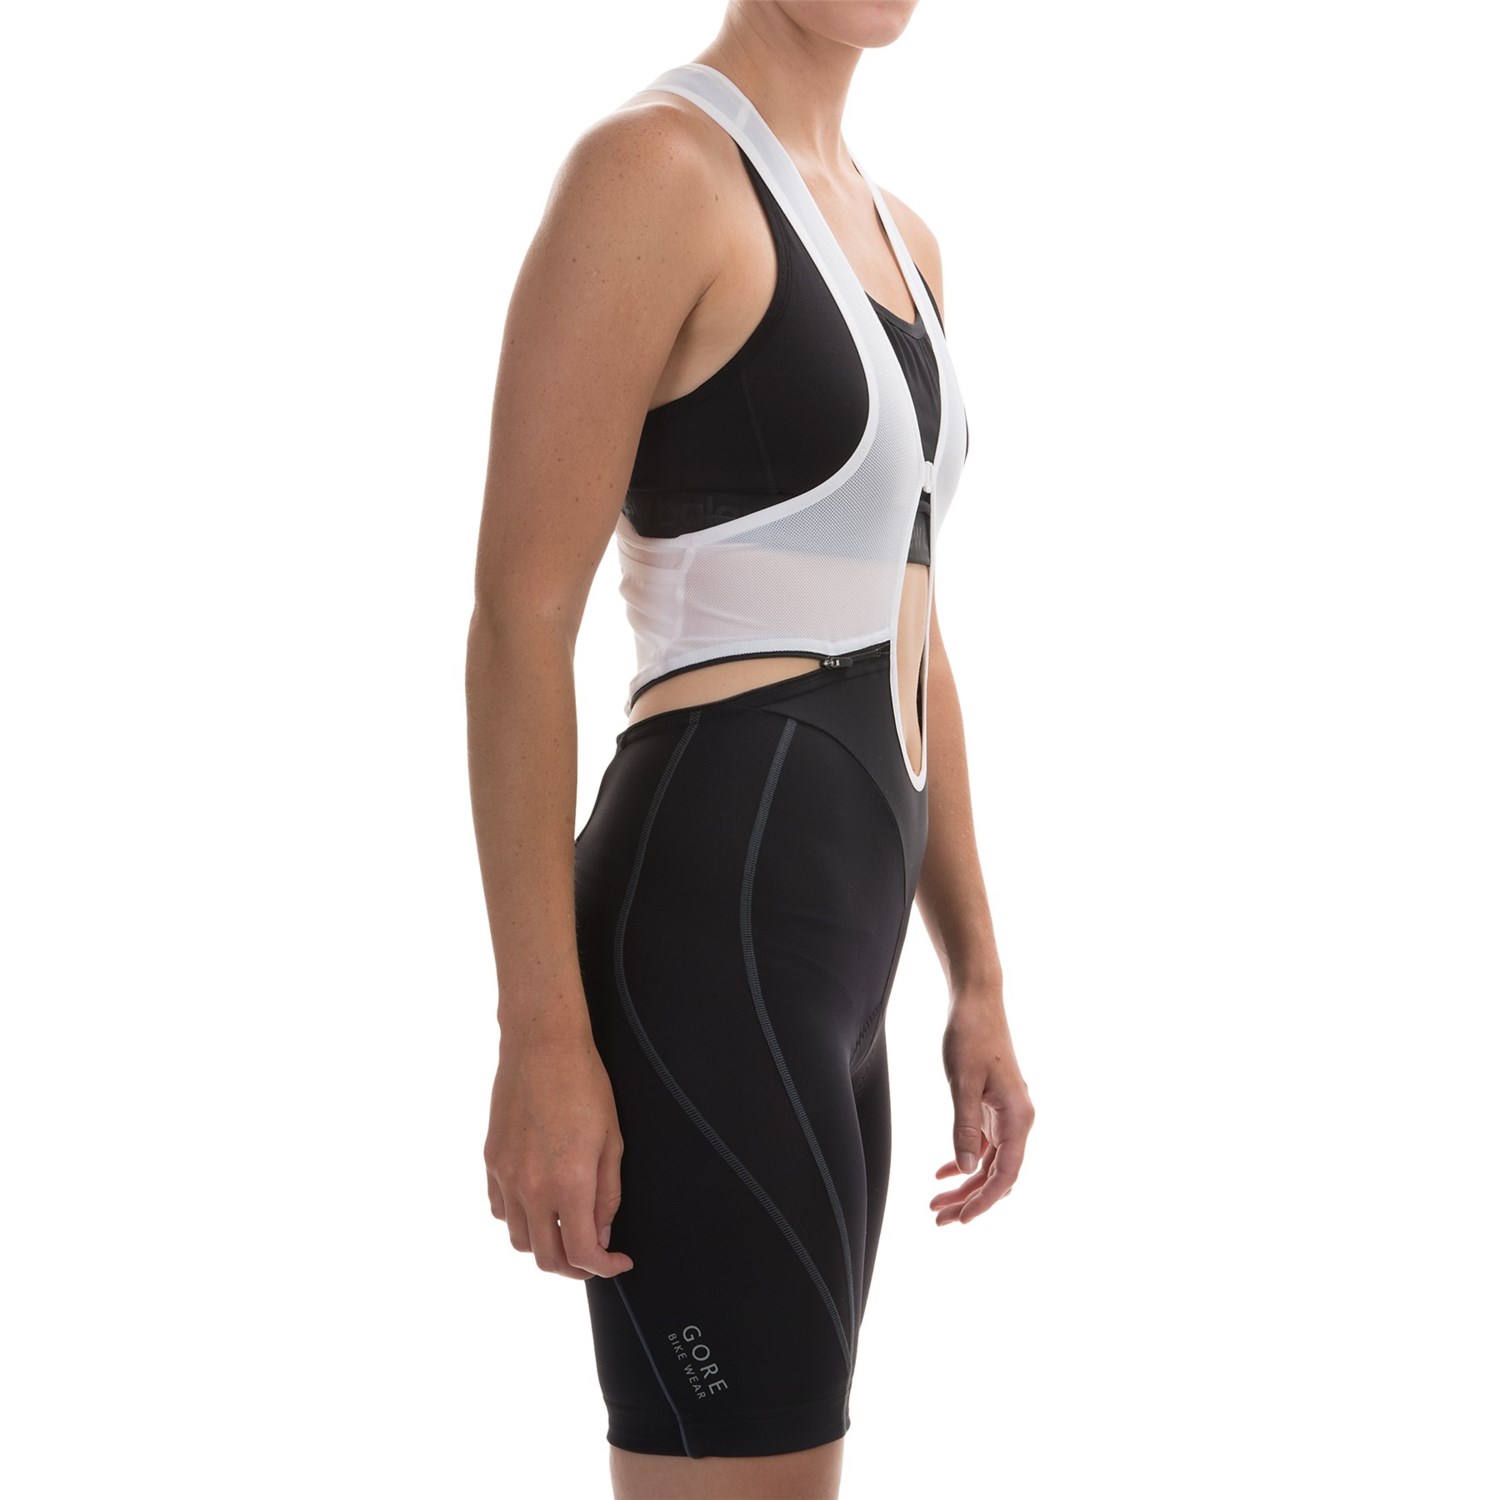 Gore Bike Wear Power Cycling Bib Shorts (For Women) - Save 64%